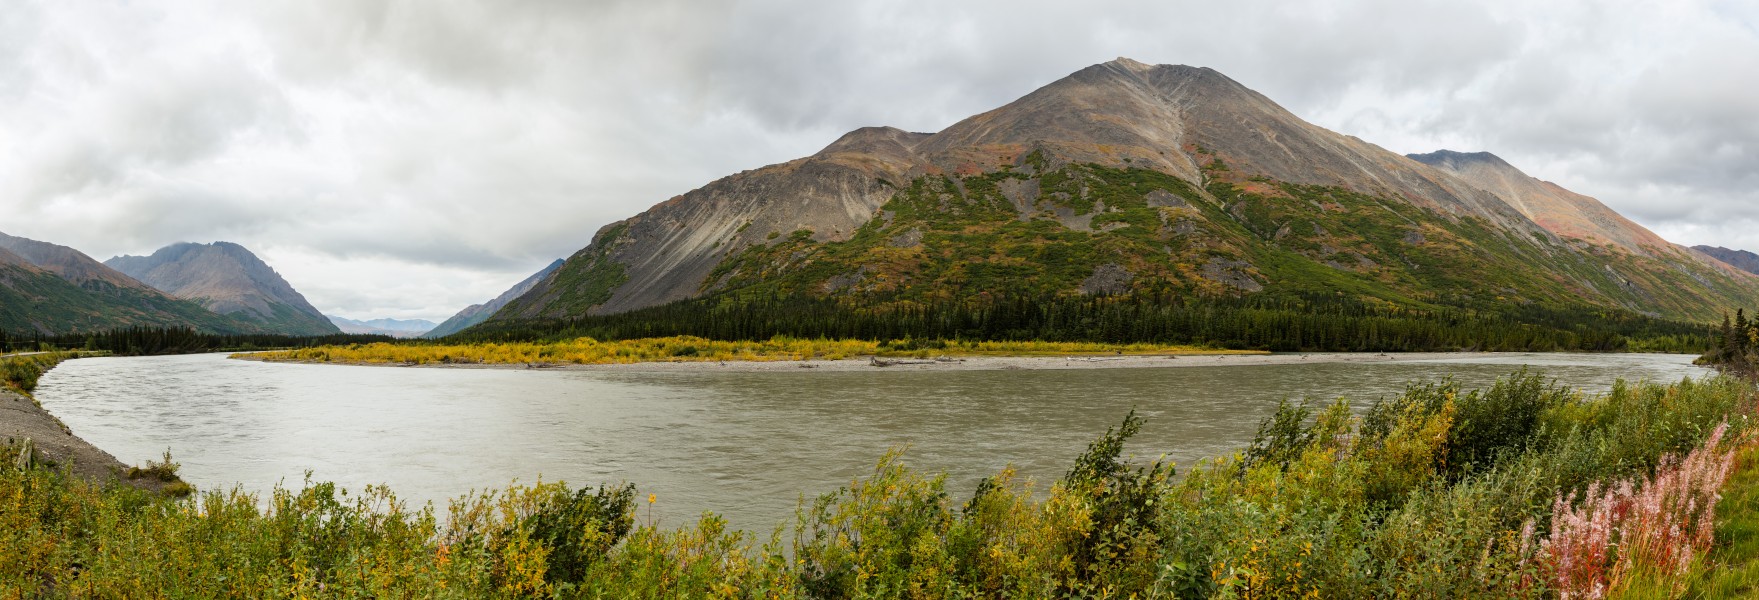 Río Nenana, McKinley Park, Alaska, Estados Unidos, 2017-08-31, DD 01-04 PAN